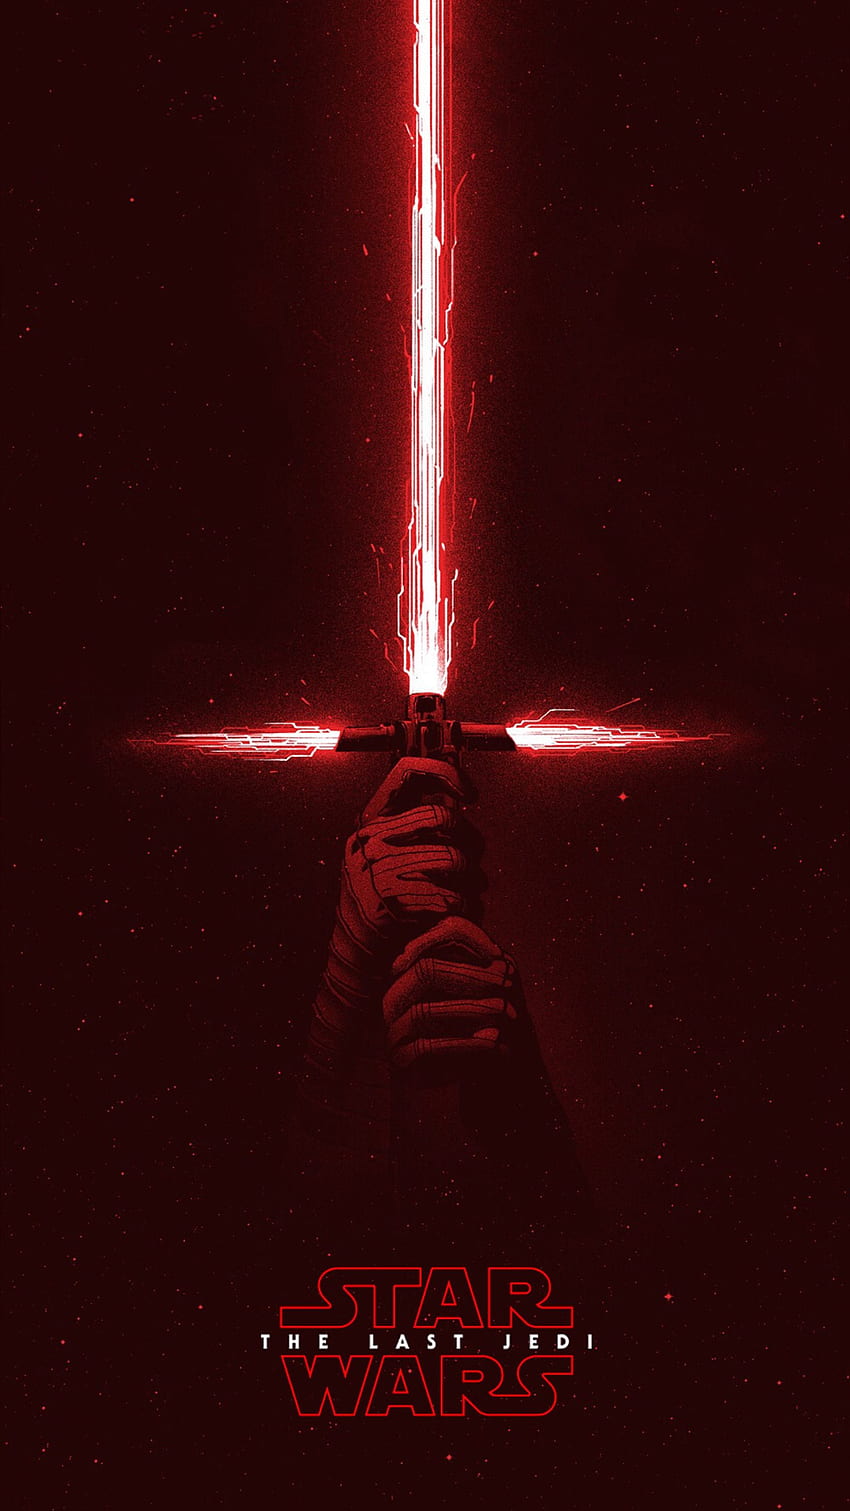 Last Jedi' Poster Reunites Luke Skywalker With His Lightsaber